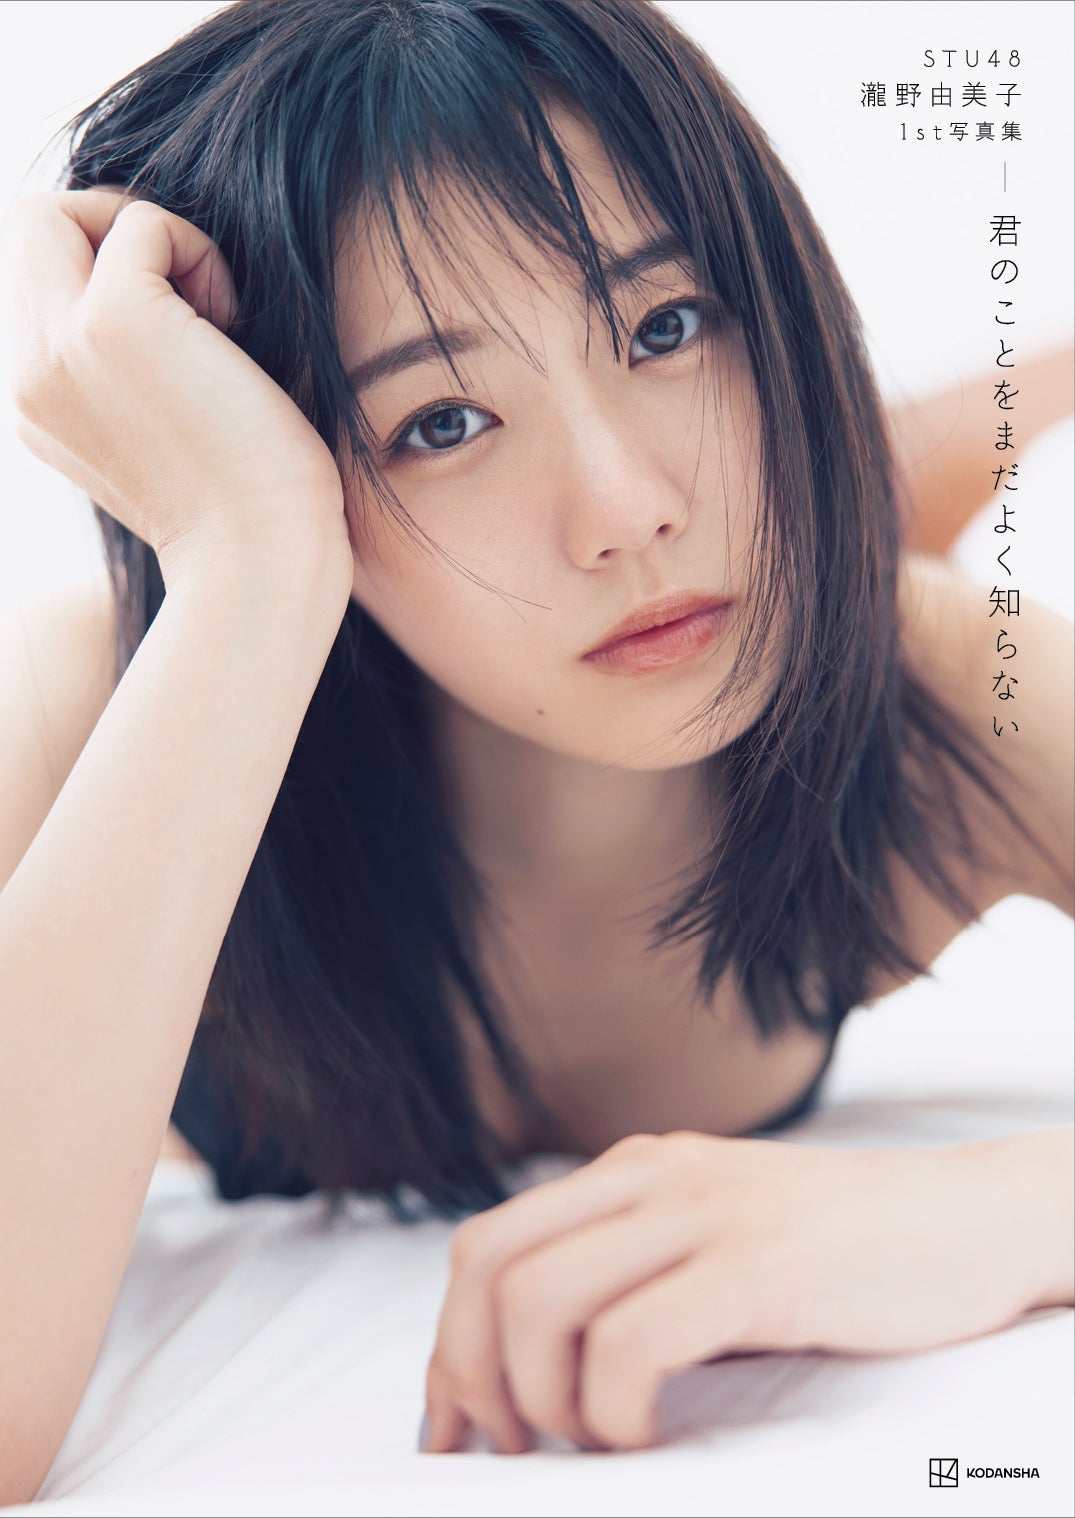 STU48瀧野由美子、1st写真集が5刷重版決定 素肌輝く収録カット特別公開 